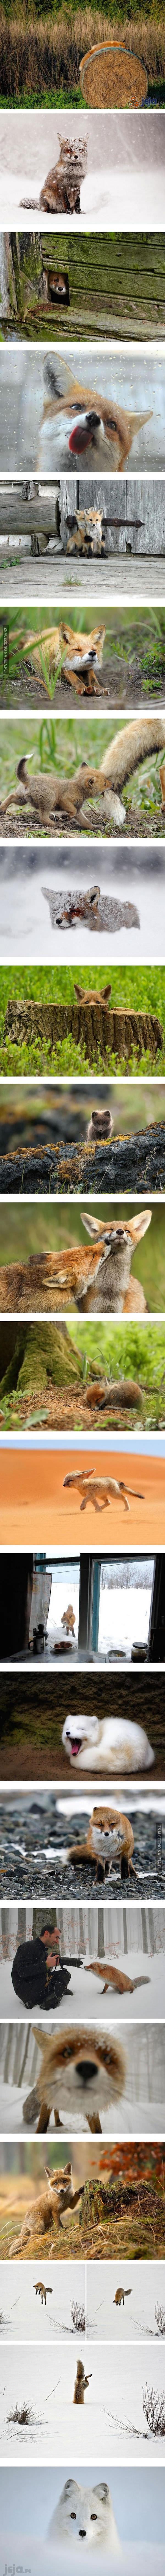 Kompilacja zdjęć dla miłośników lisów